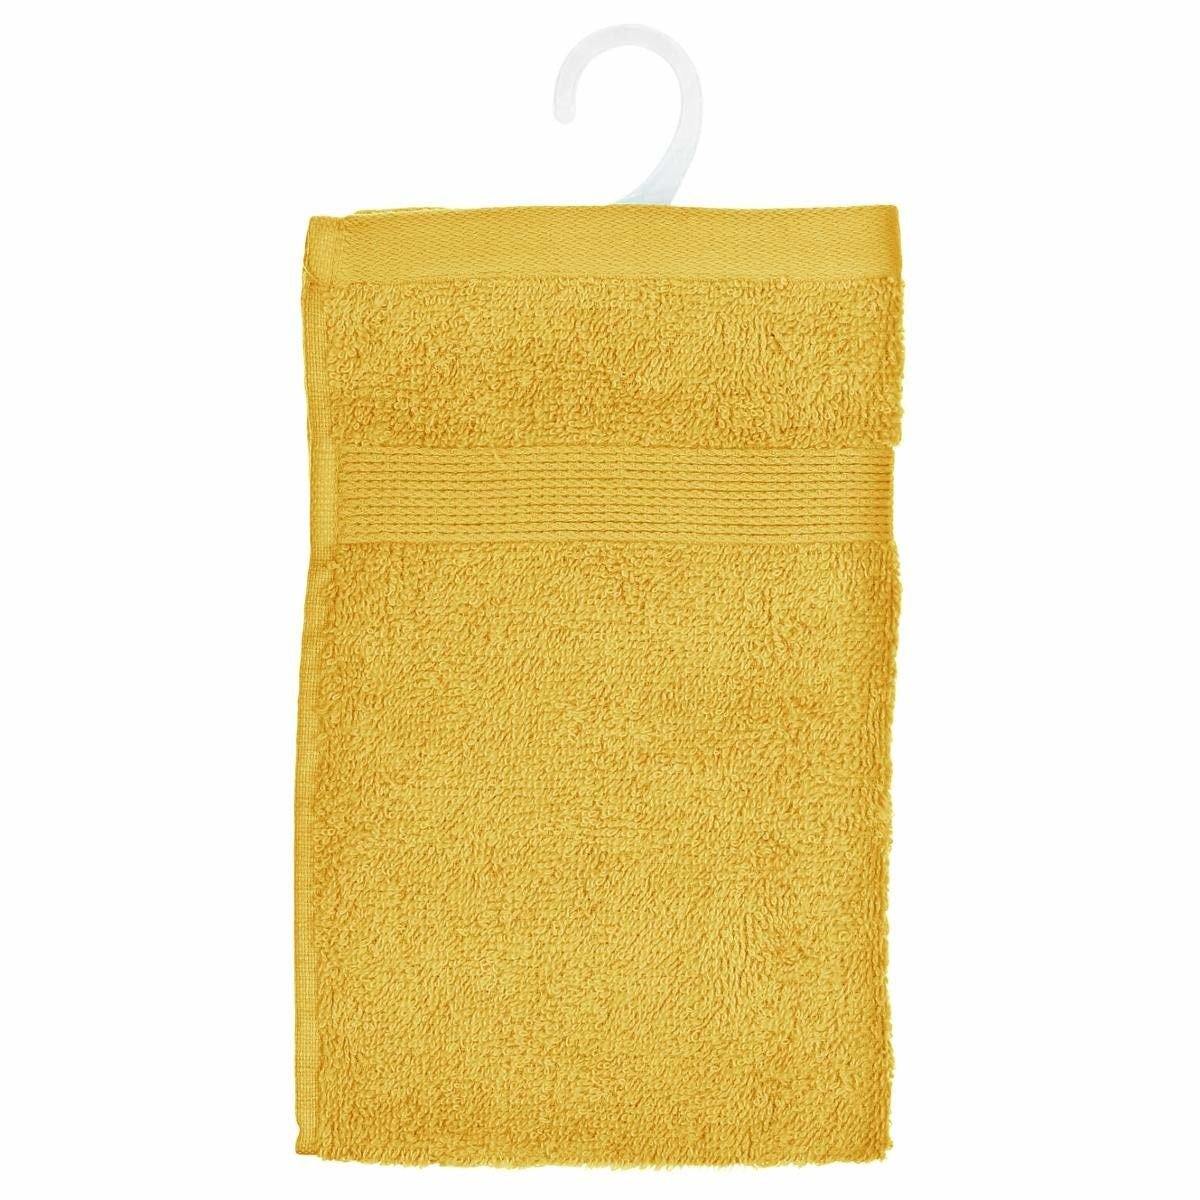 Ręcznik bawełniany, 30 x 50 cm, kolor żółty